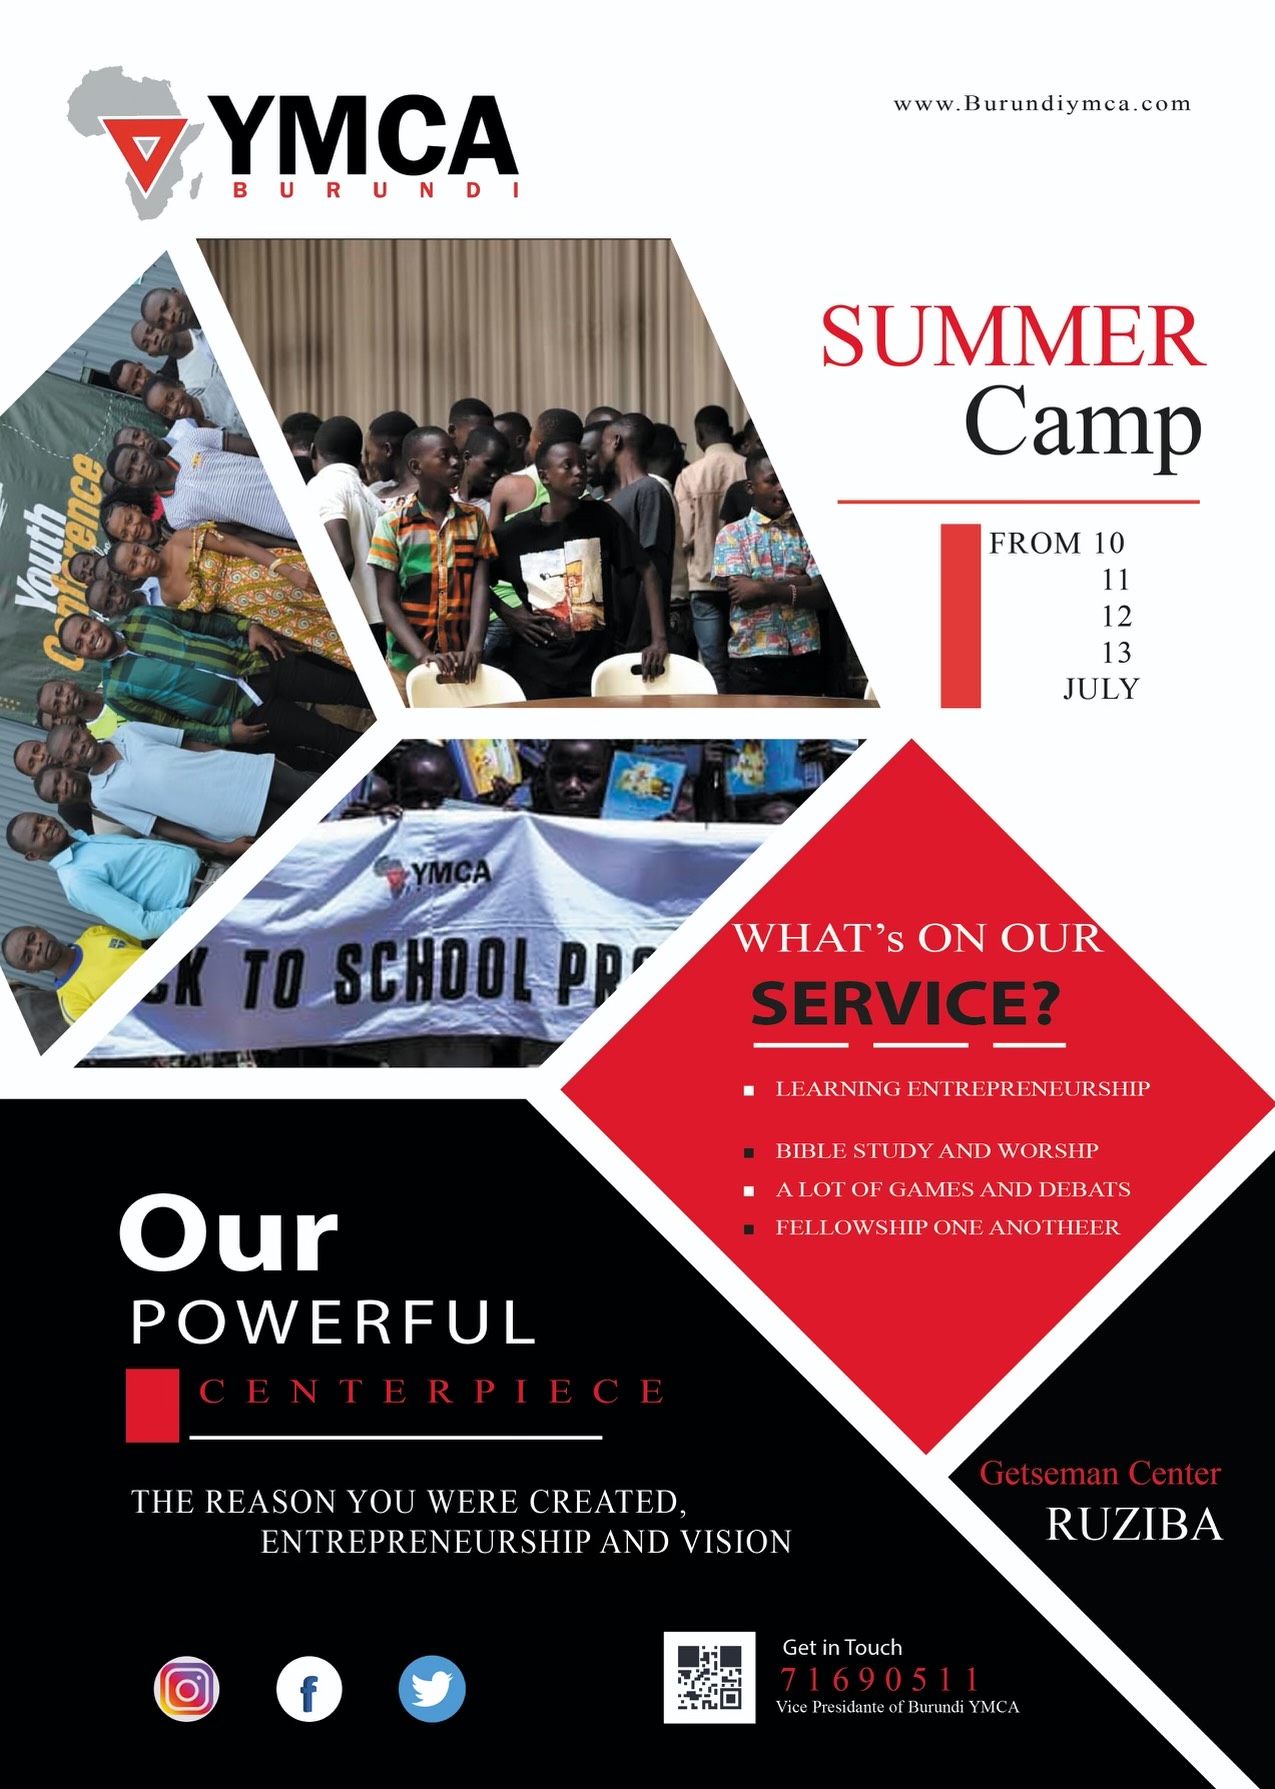 Burundi summer camp poster image